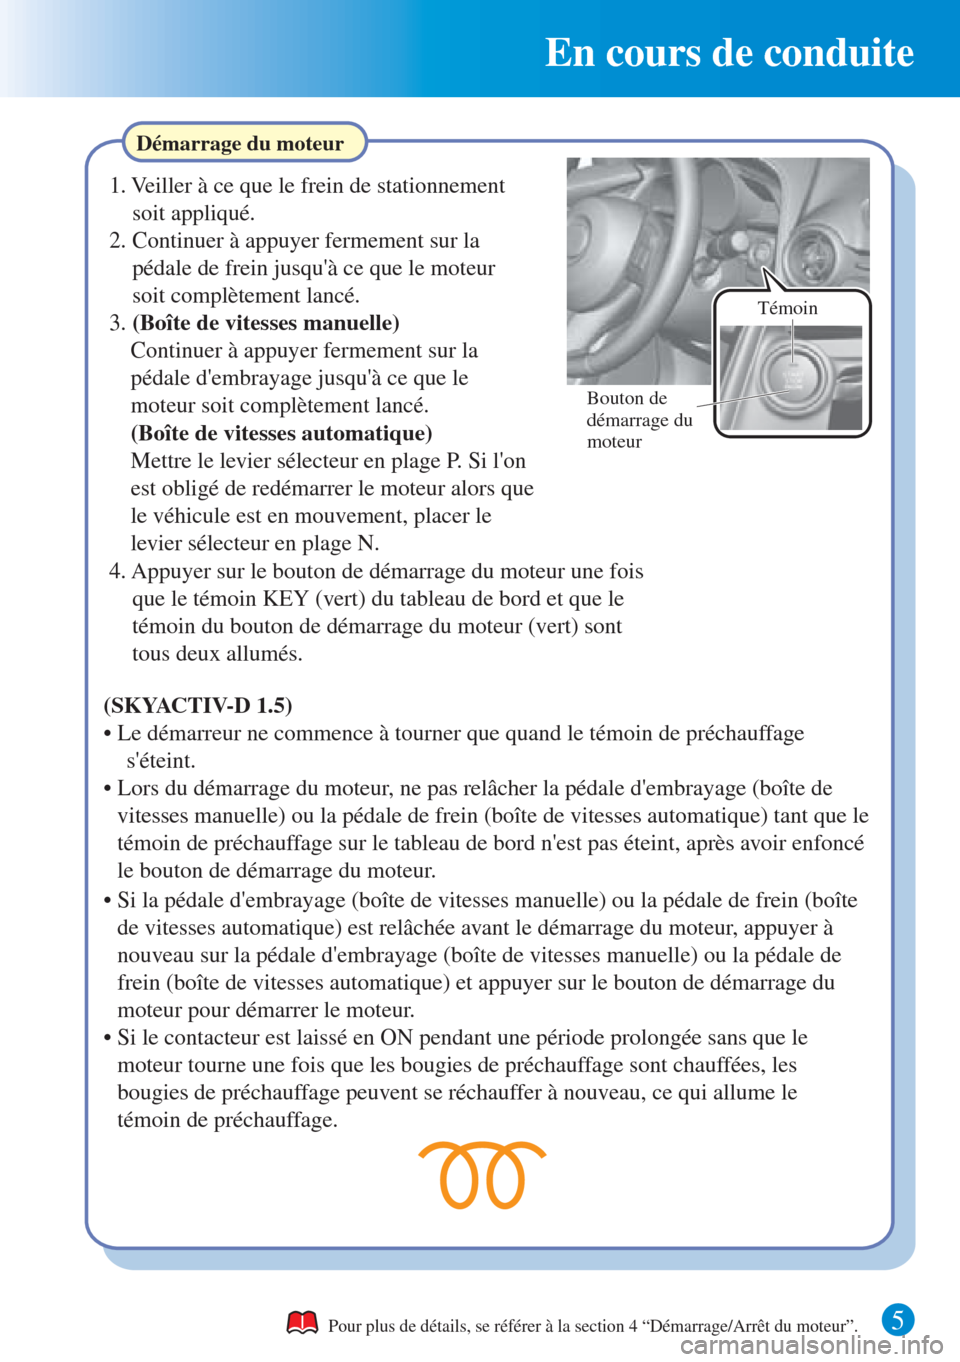 MAZDA MODEL CX-3 2016  Guide dutilisation rapide (in French)  En cours de conduite
5 
Démarrage du moteur
Pour plus de détails, se référer à la section 4 “Démarrage/Arrêt du moteur”.
1. Veiller à ce que le frein de stationnement 
soit appliqué.
2. C